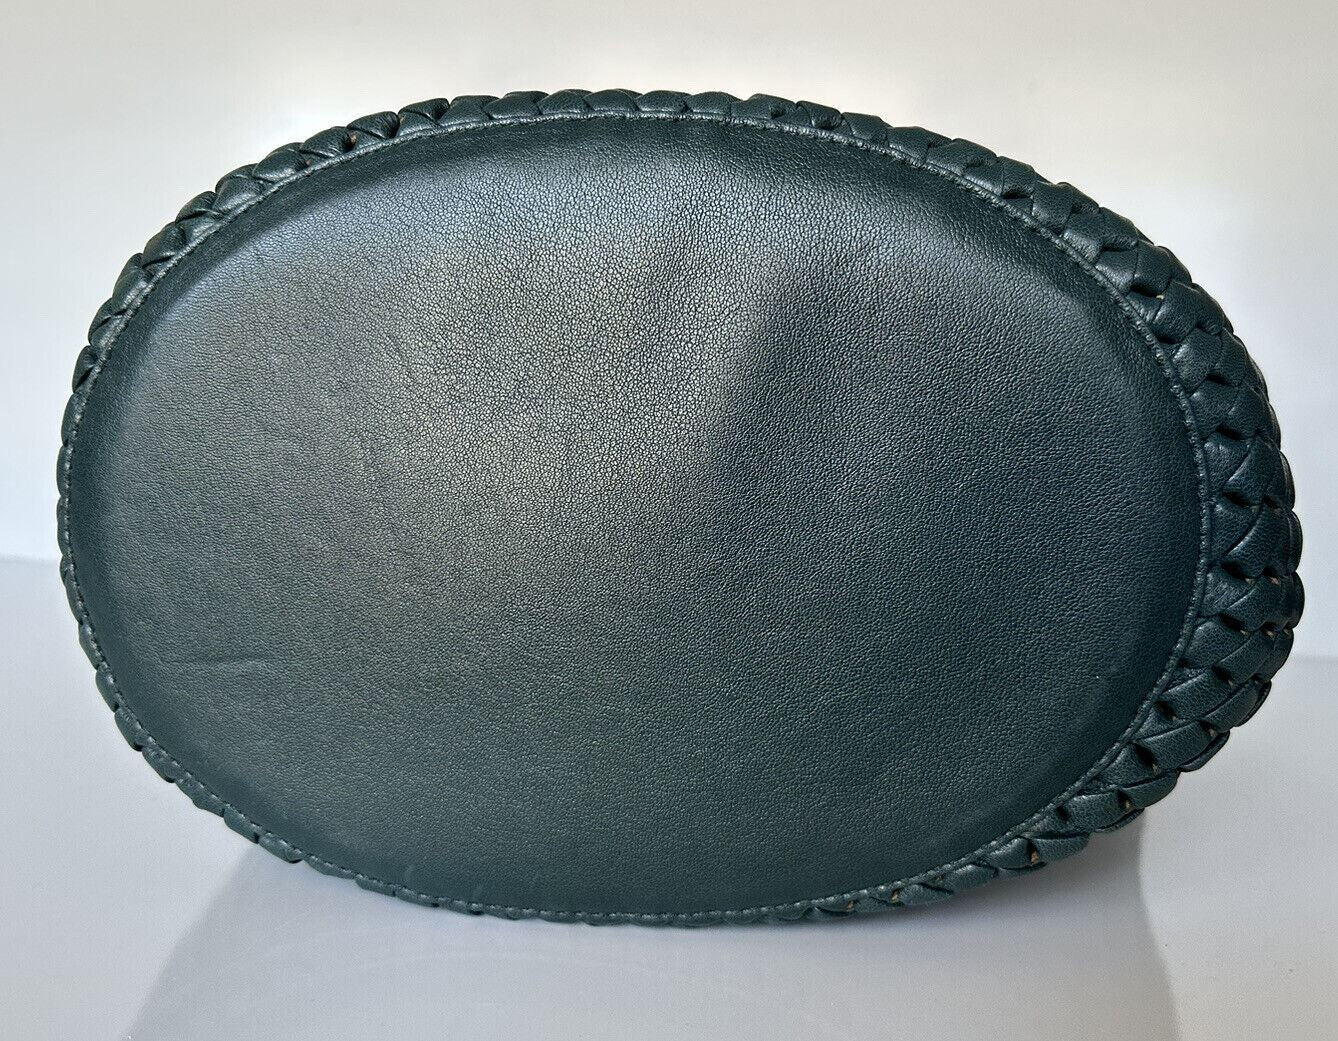 NWT $7000 Bottega Veneta Medium Leather Basket Tote in Intreccio Rete 578342